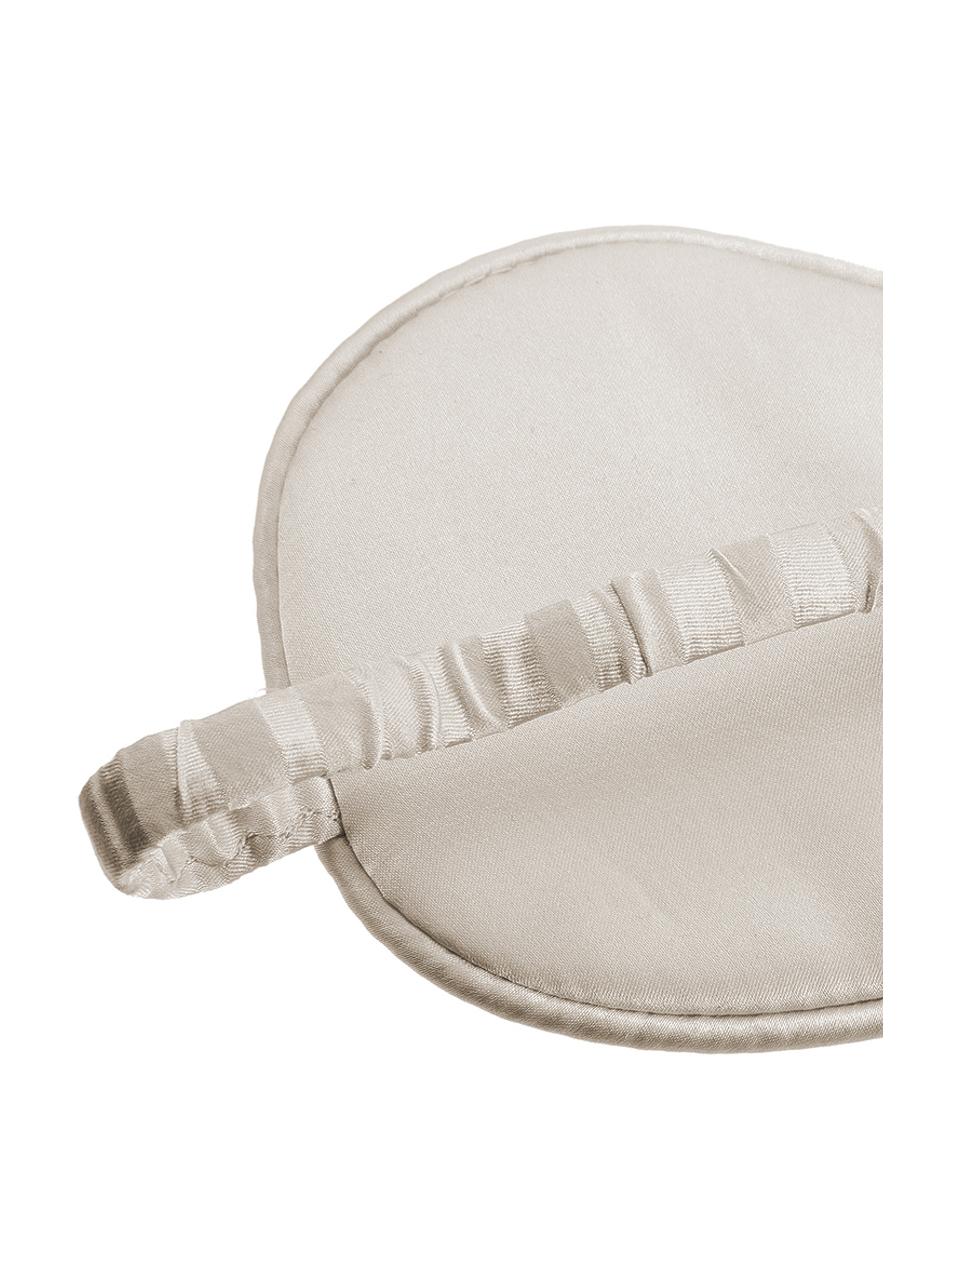 Seiden-Schlafmaske Silke, Vorderseite: 70% Cashmere, 30% Merinow, Riemen: 100% Seide, Elfenbeinfarben, Beige, 21 x 9 cm